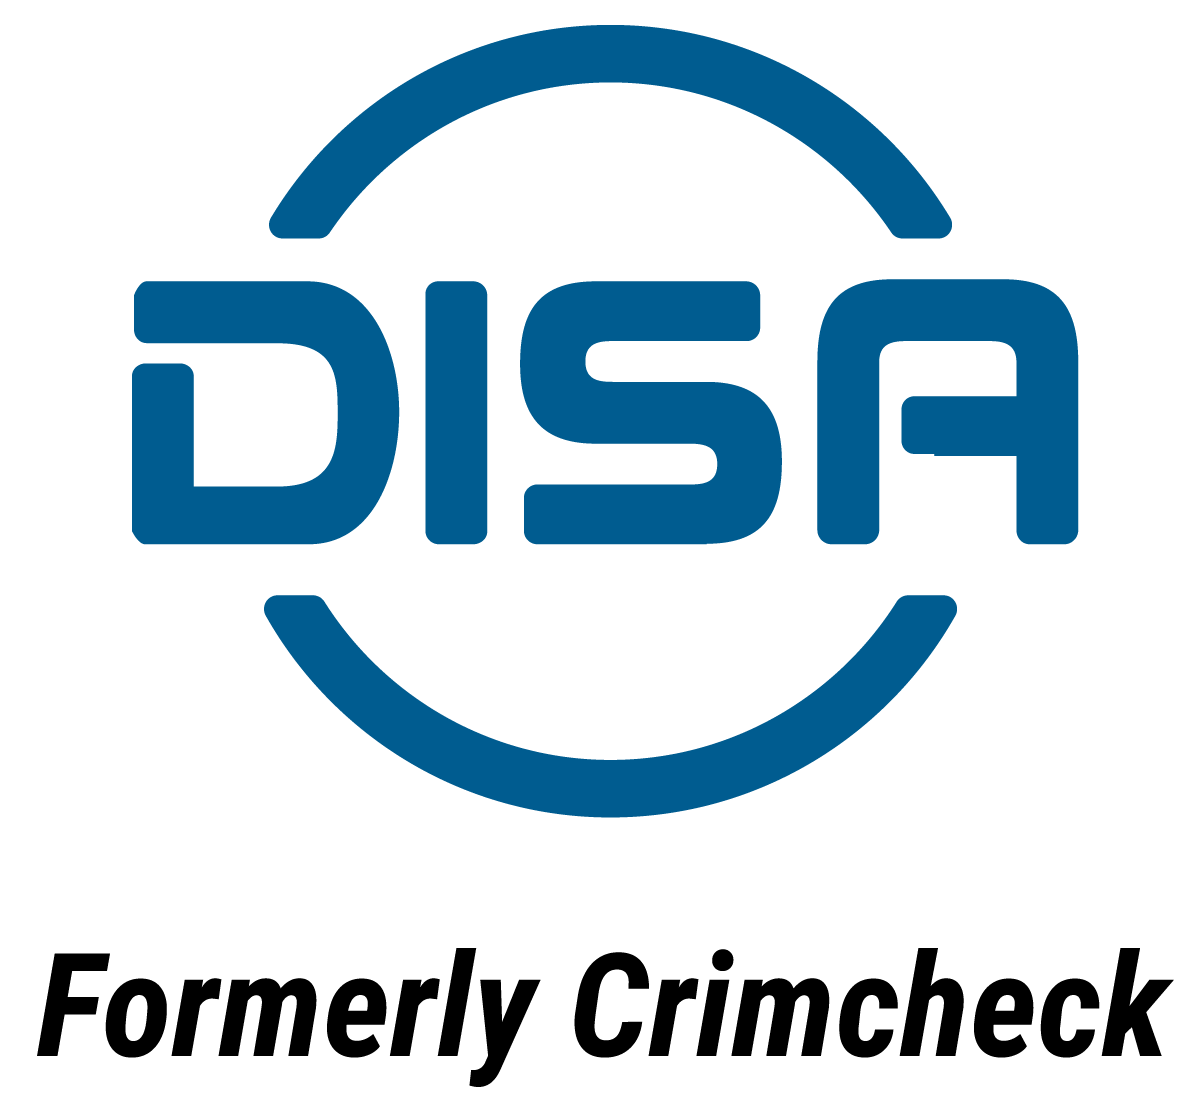 DISA logo